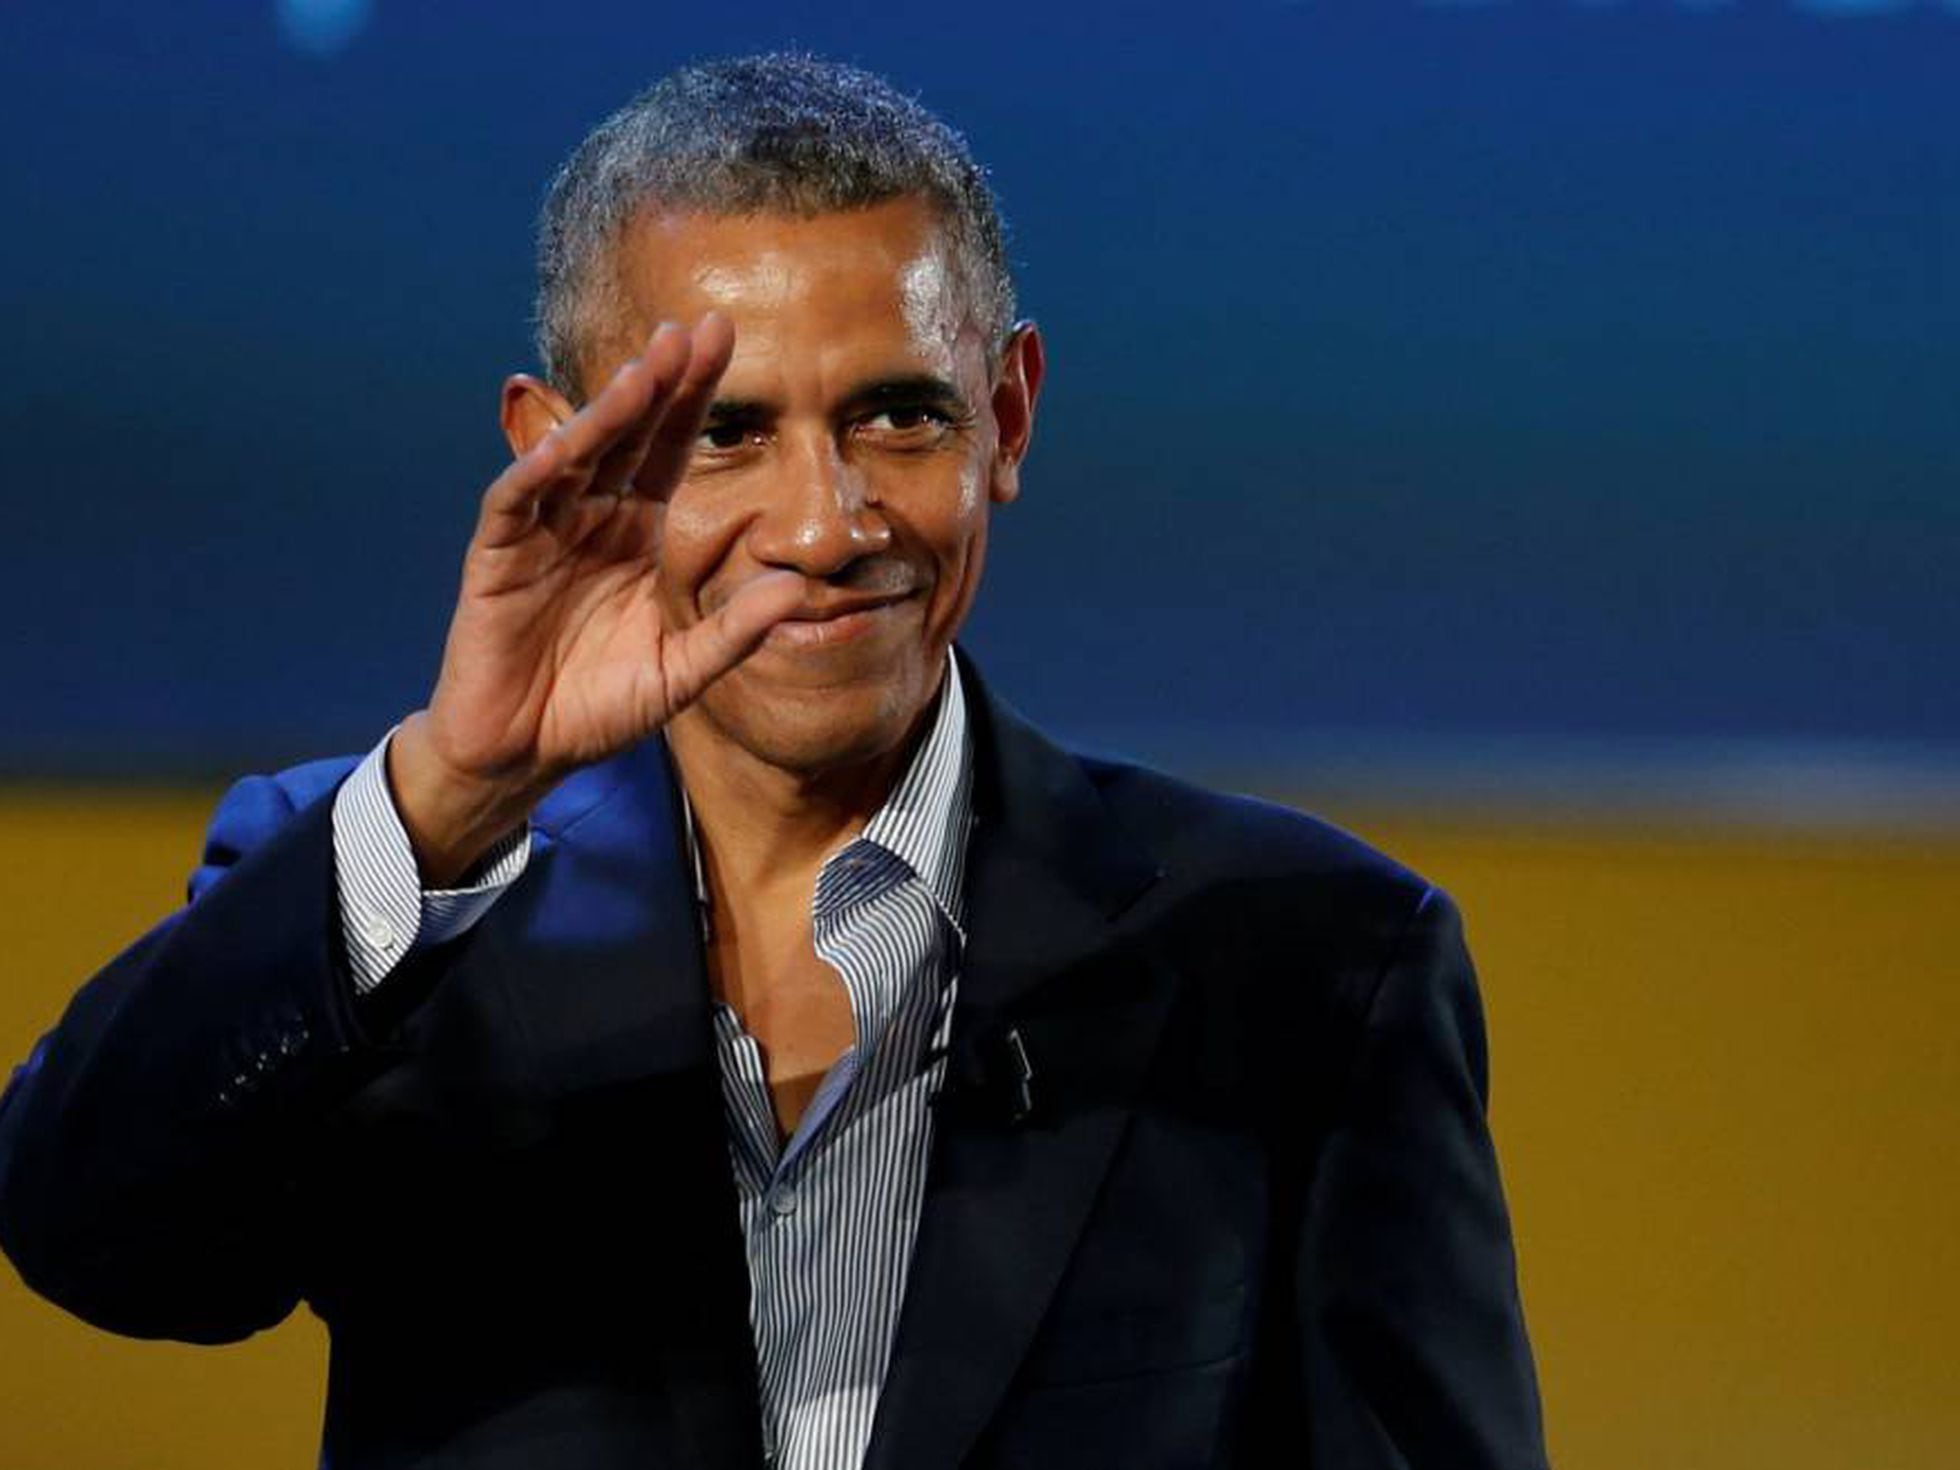 La vida de los Obama cuatro meses después de salir de la Casa Blanca |  Gente | EL PAÍS